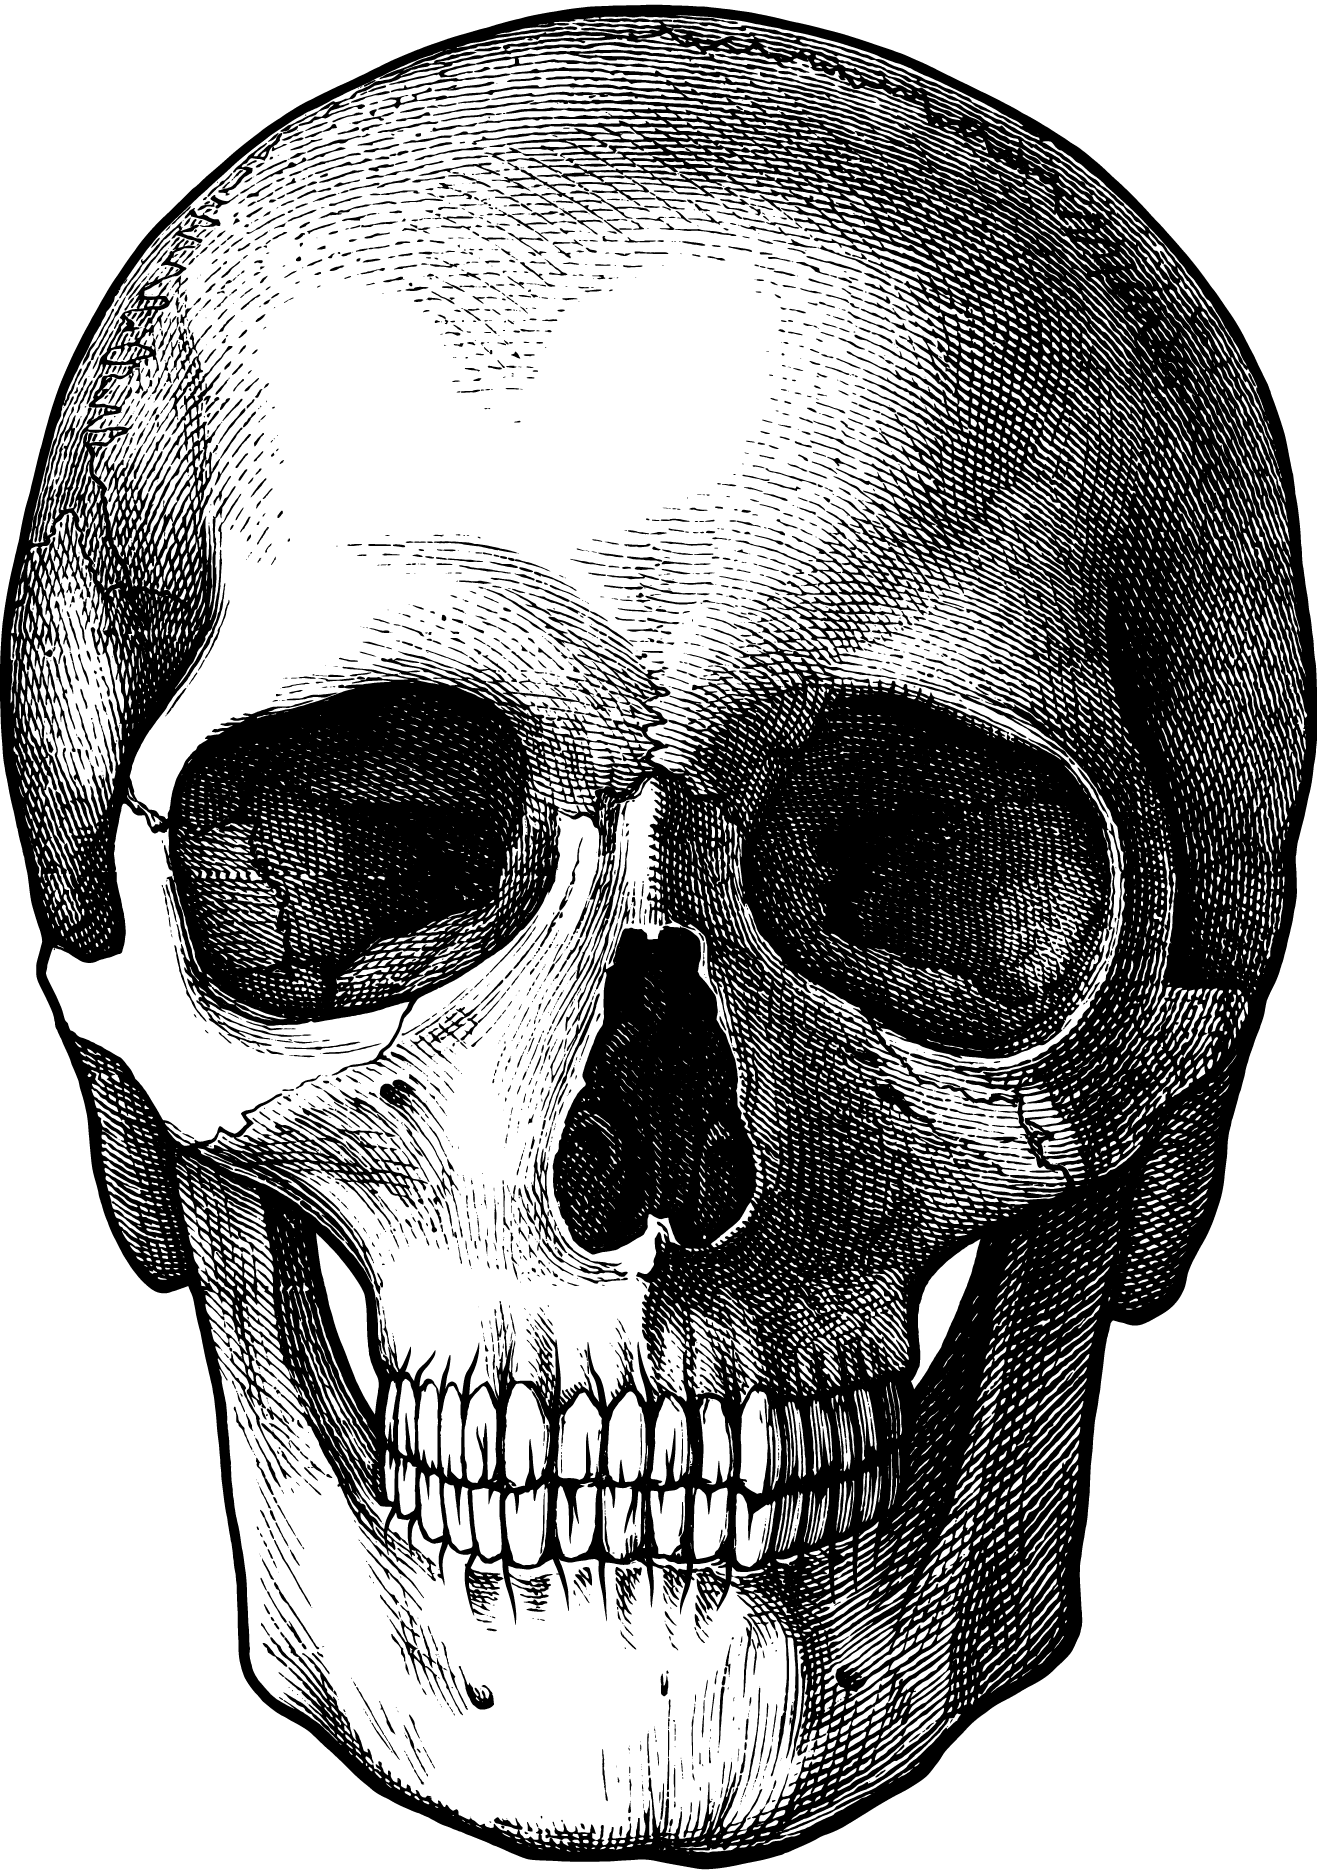 Skull Teeth Drawing. Explore